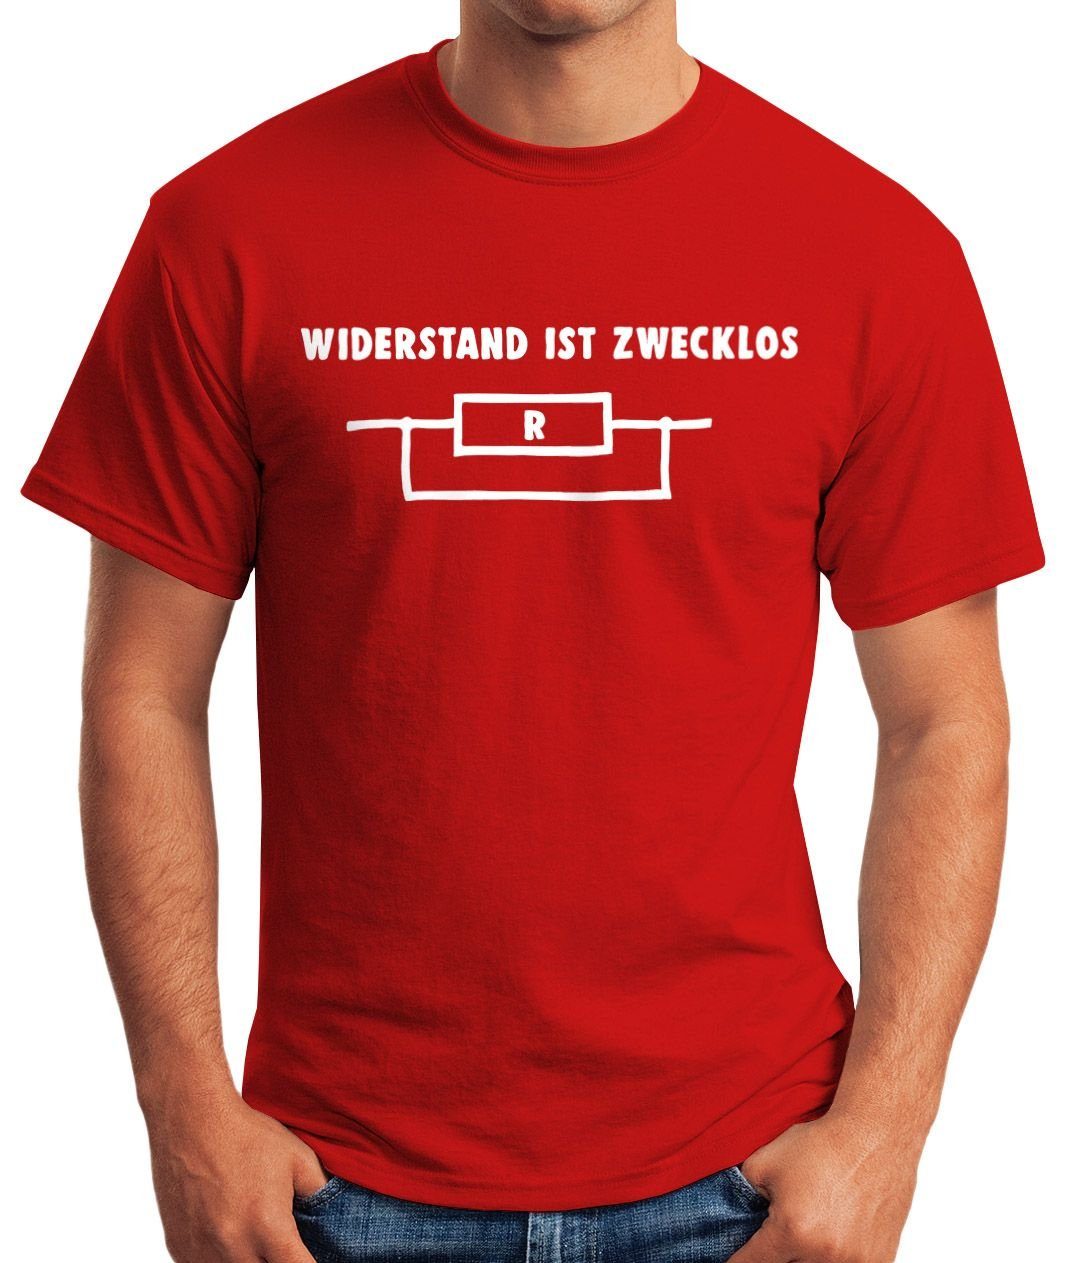 MoonWorks Moonworks® Print-Shirt zwecklos ist mit rot Shirt T-Shirt Herren Print Widerstand